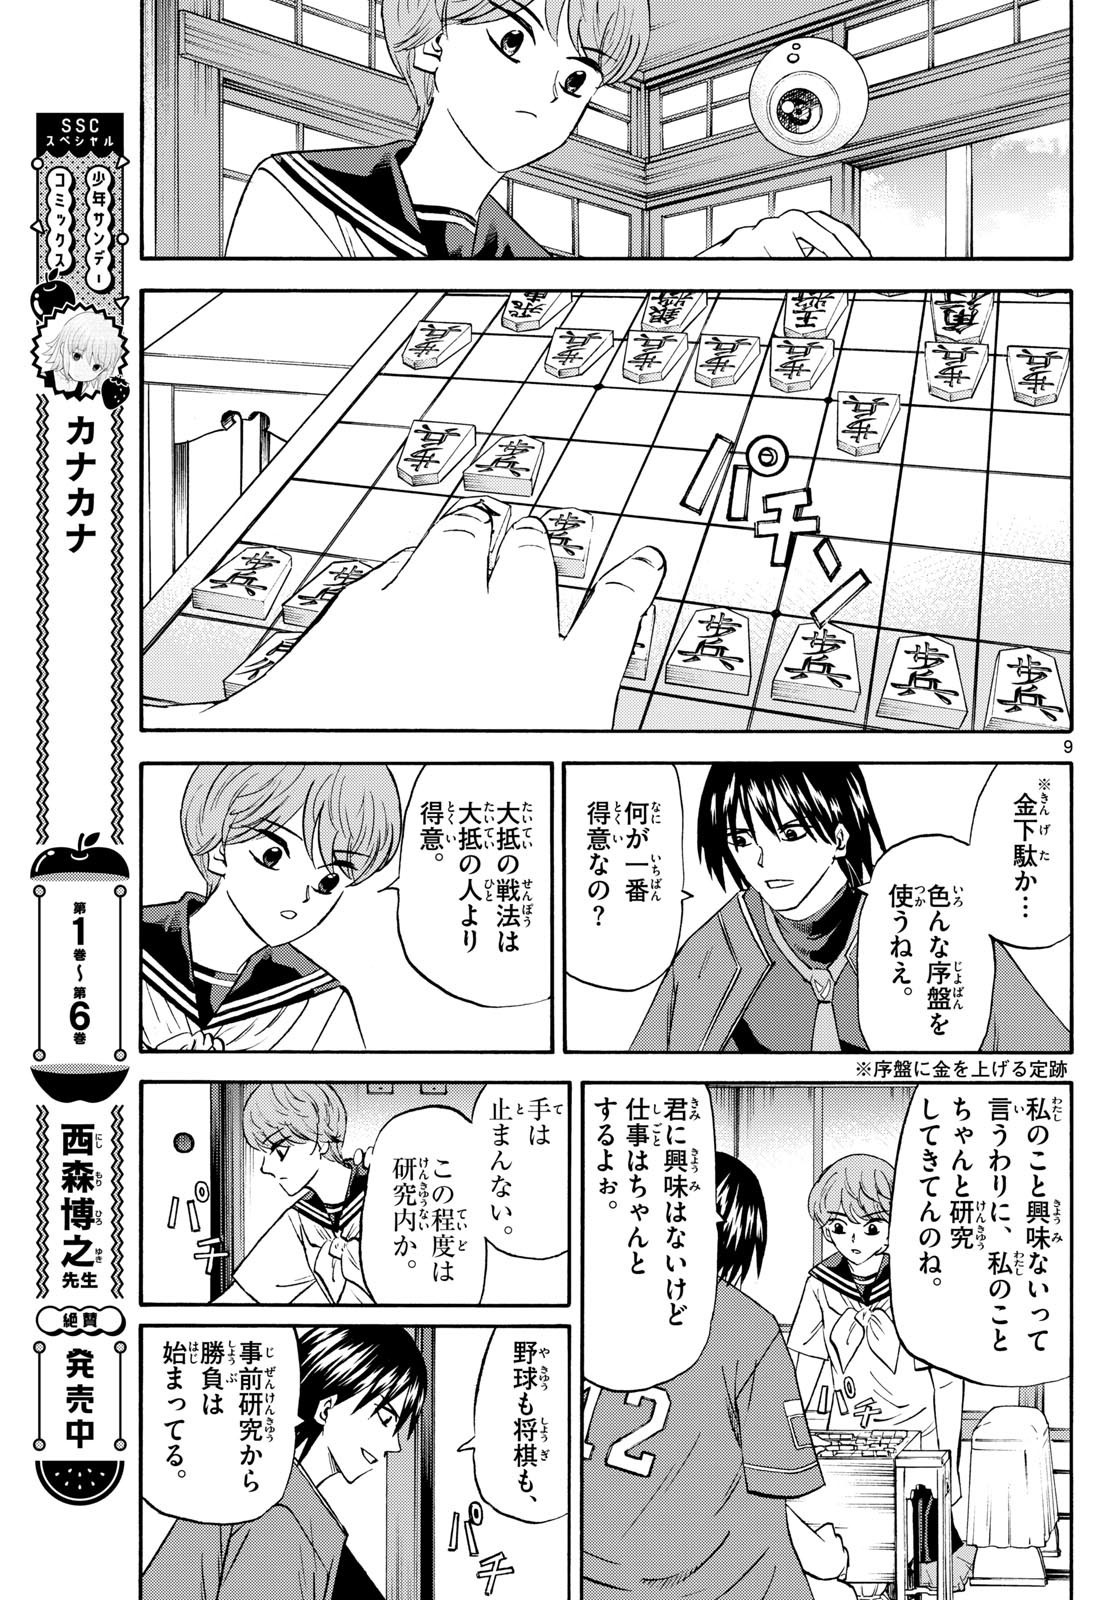 Ryu-to-Ichigo - Chapter 197 - Page 9